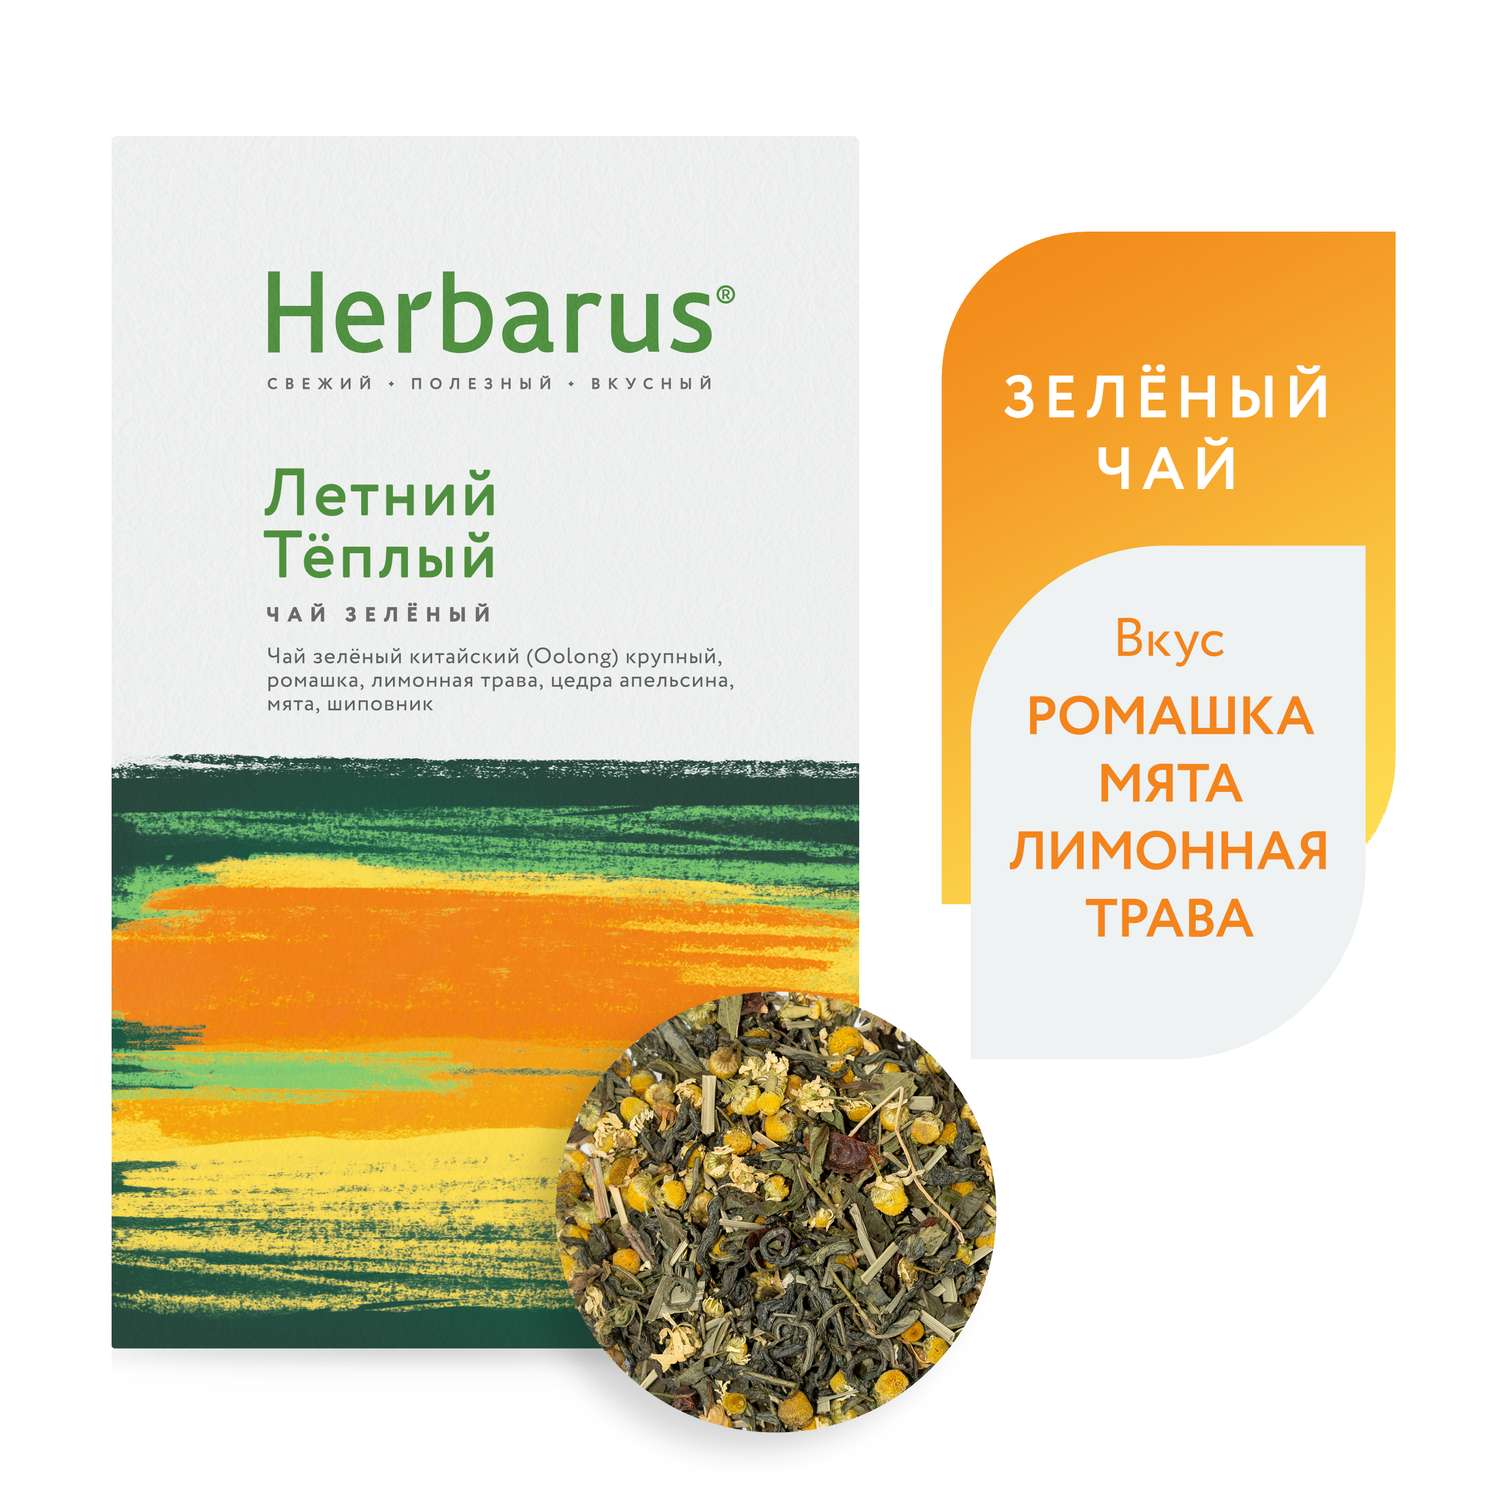 Зеленый чай с добавками Herbarus Летний теплый листовой 75 г. - фото 1